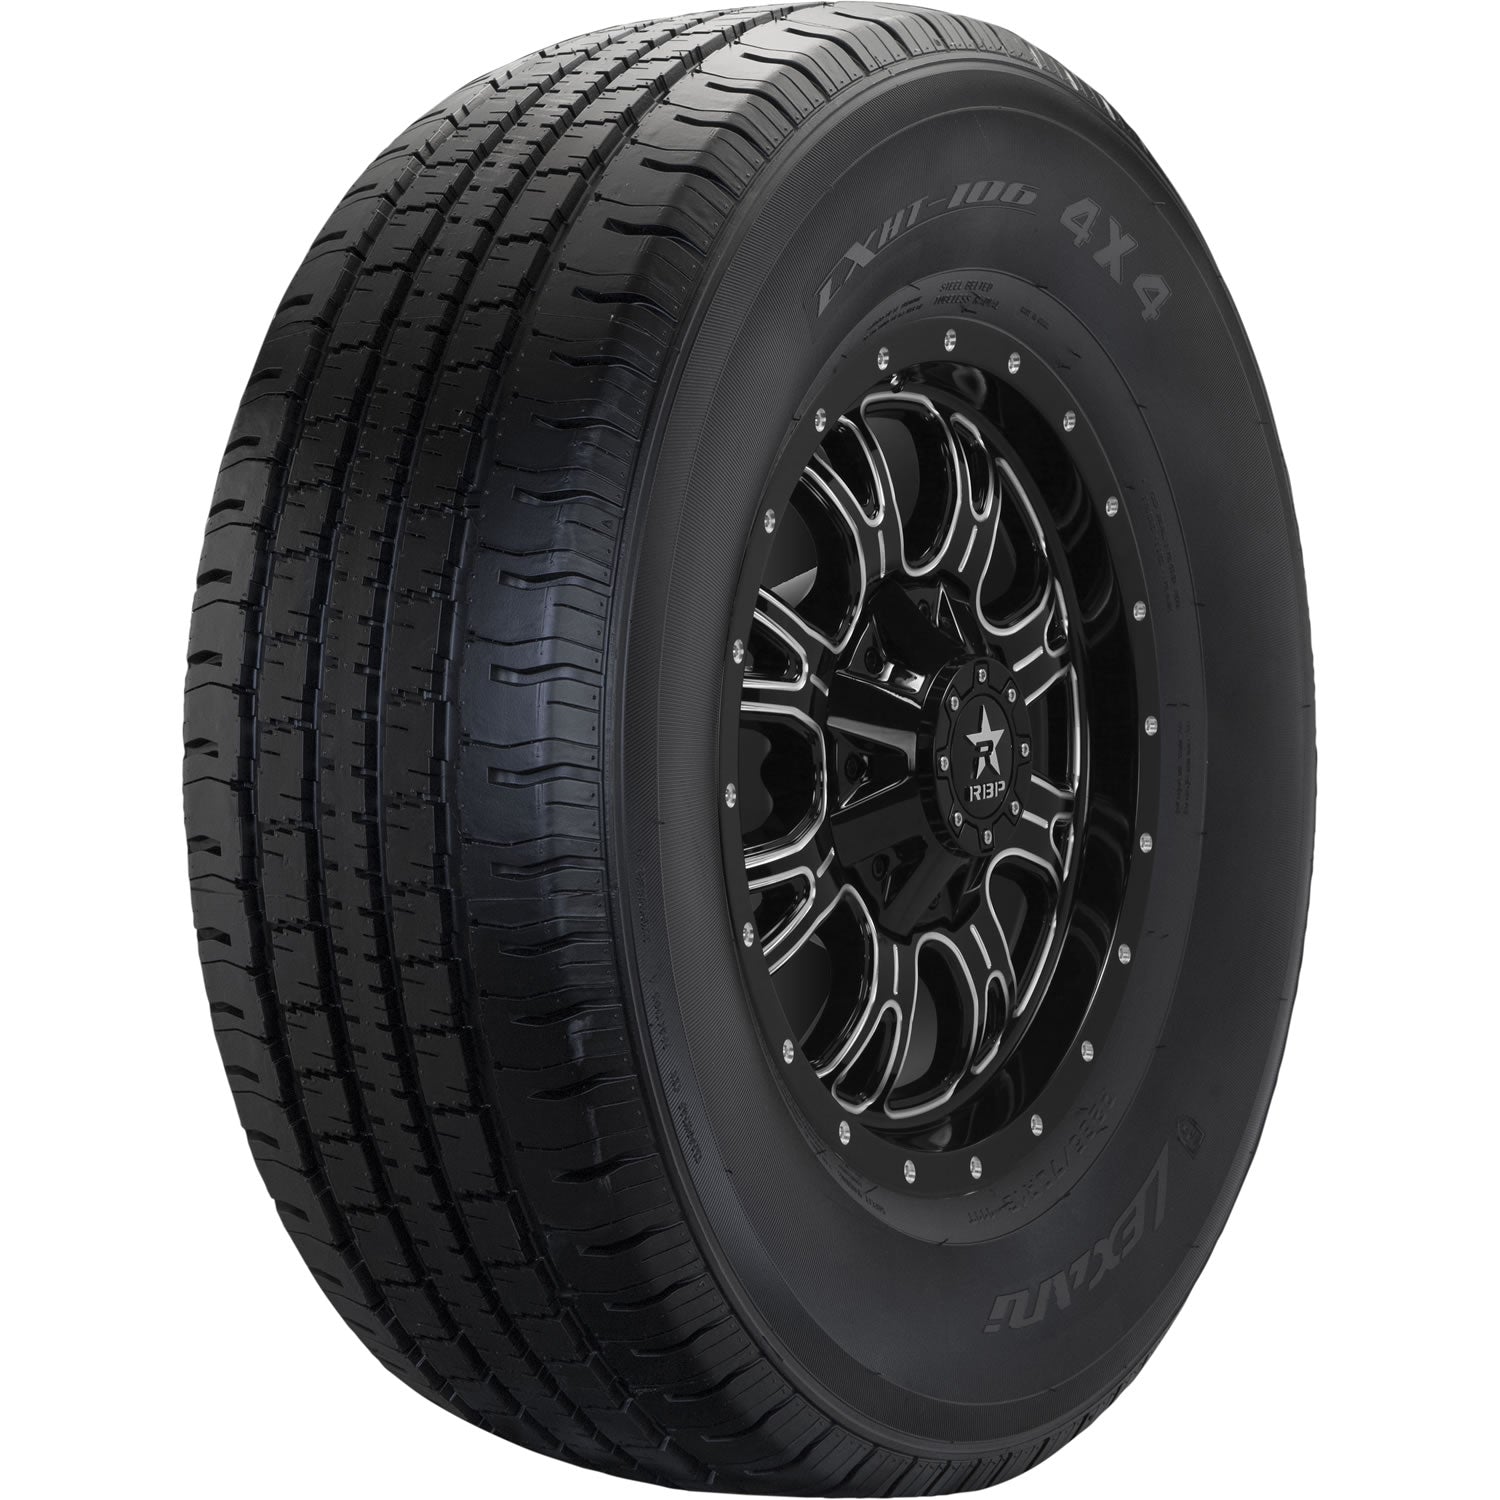 LEXANI LXHT-106 P235/60R17 (28.1X9.5R 17) Tires